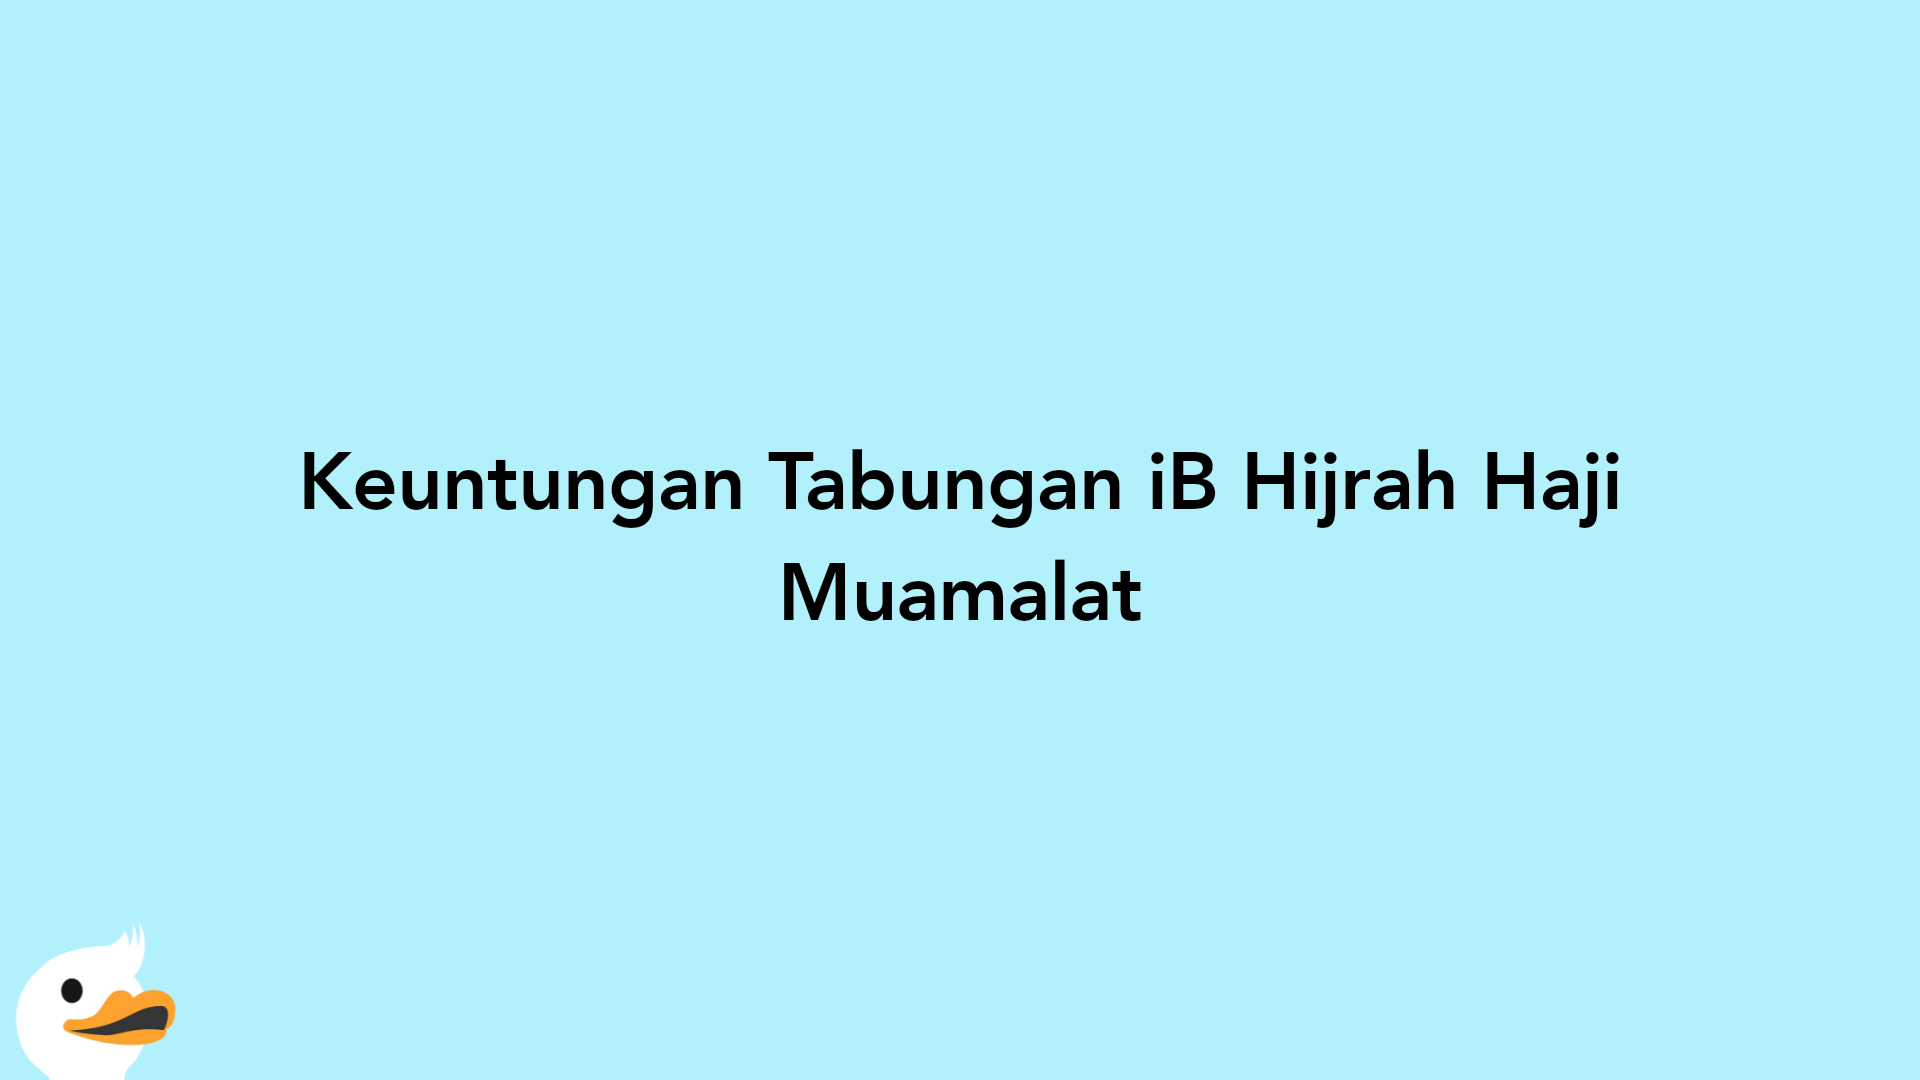 Keuntungan Tabungan iB Hijrah Haji Muamalat